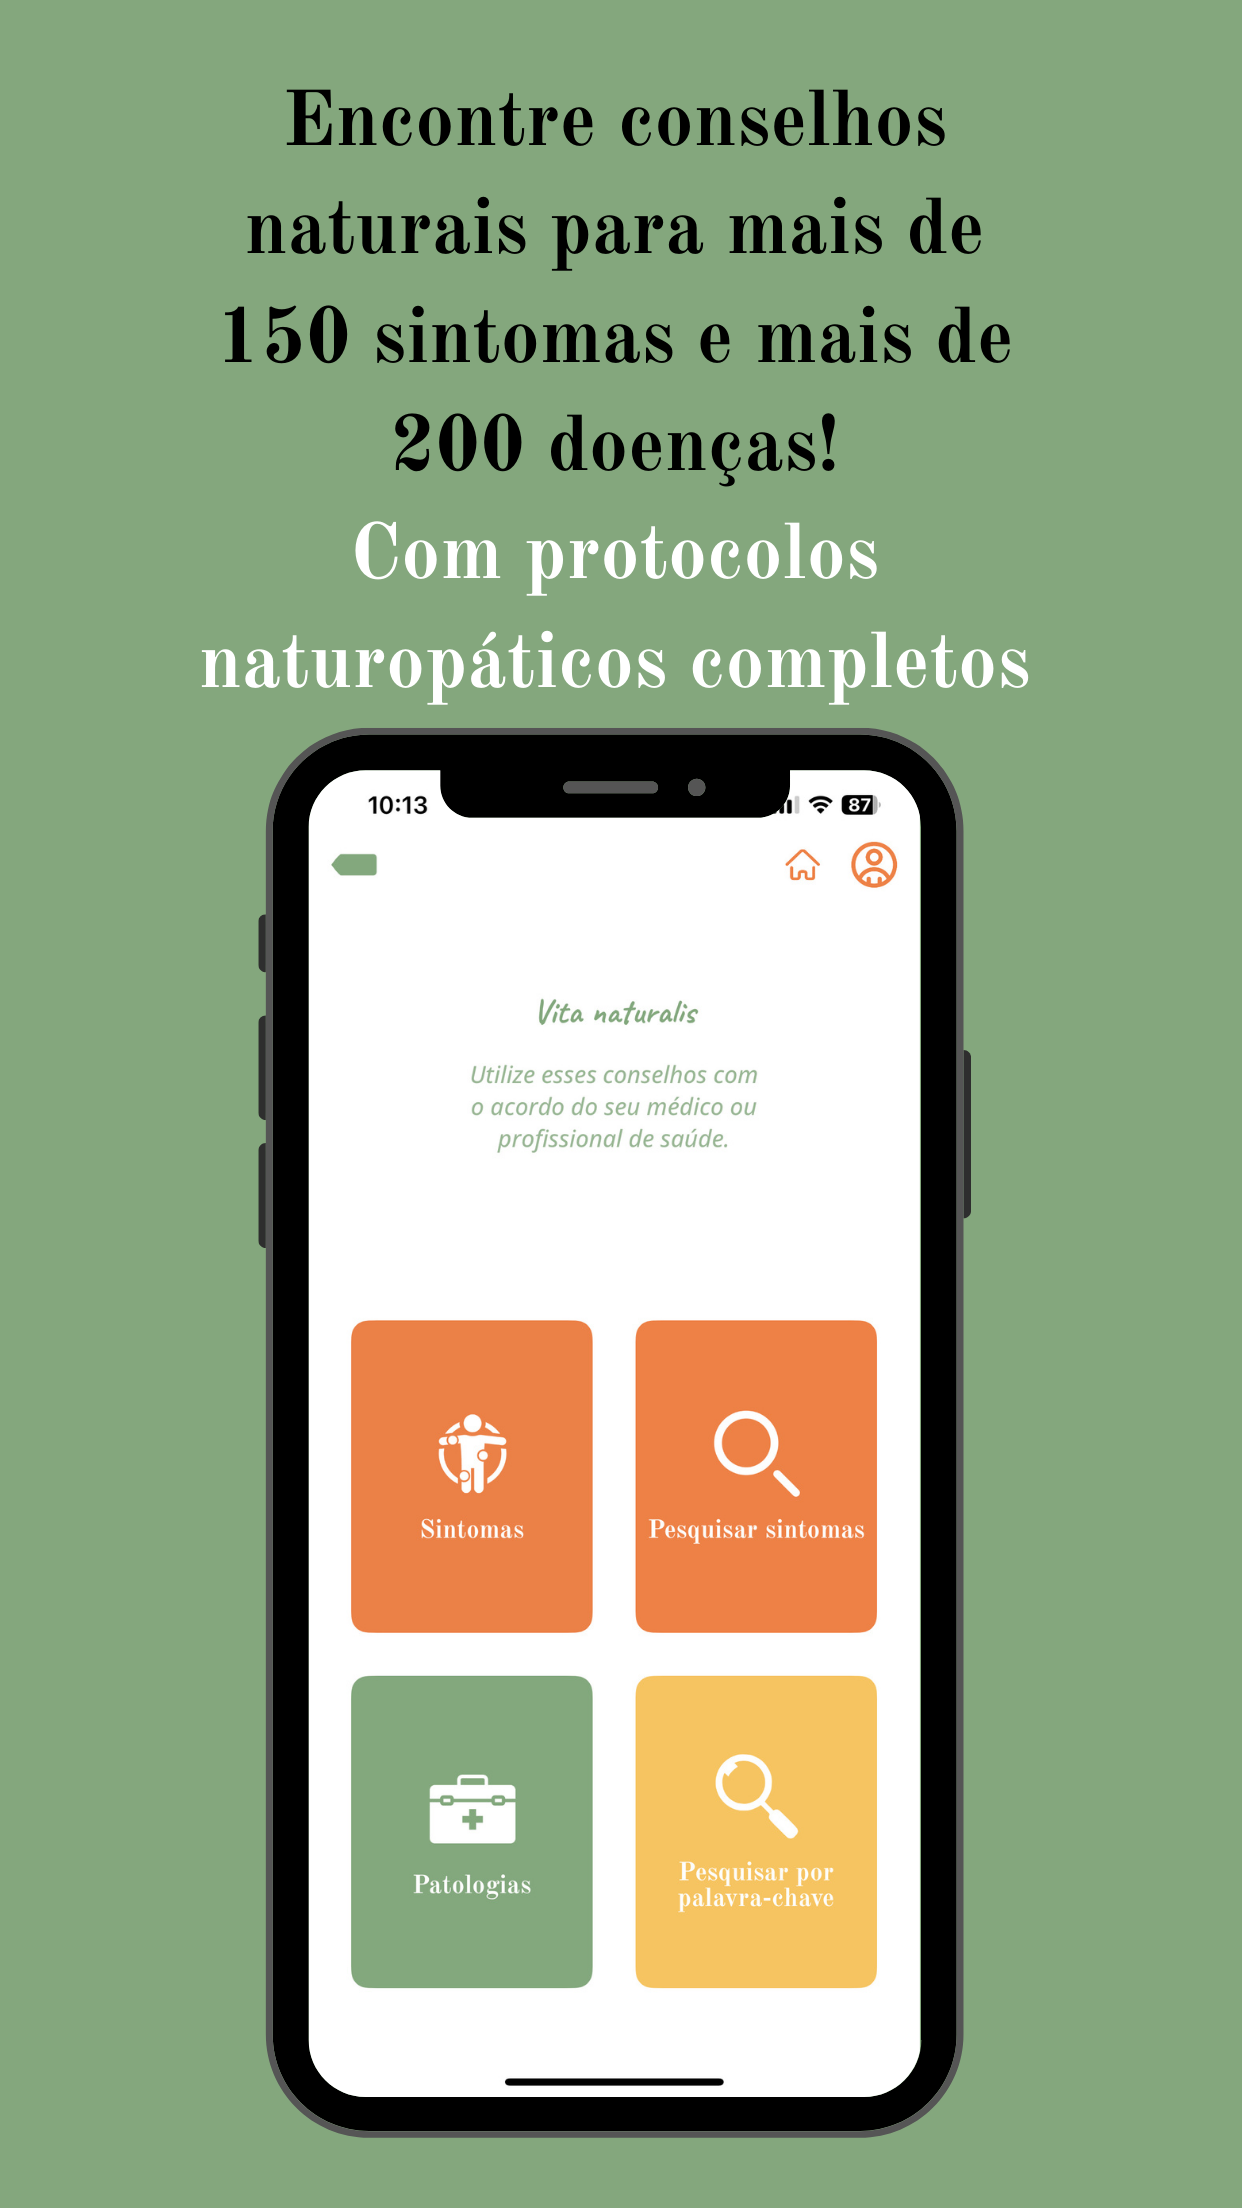 VITA NATURALIS - The 100% Natural Health app